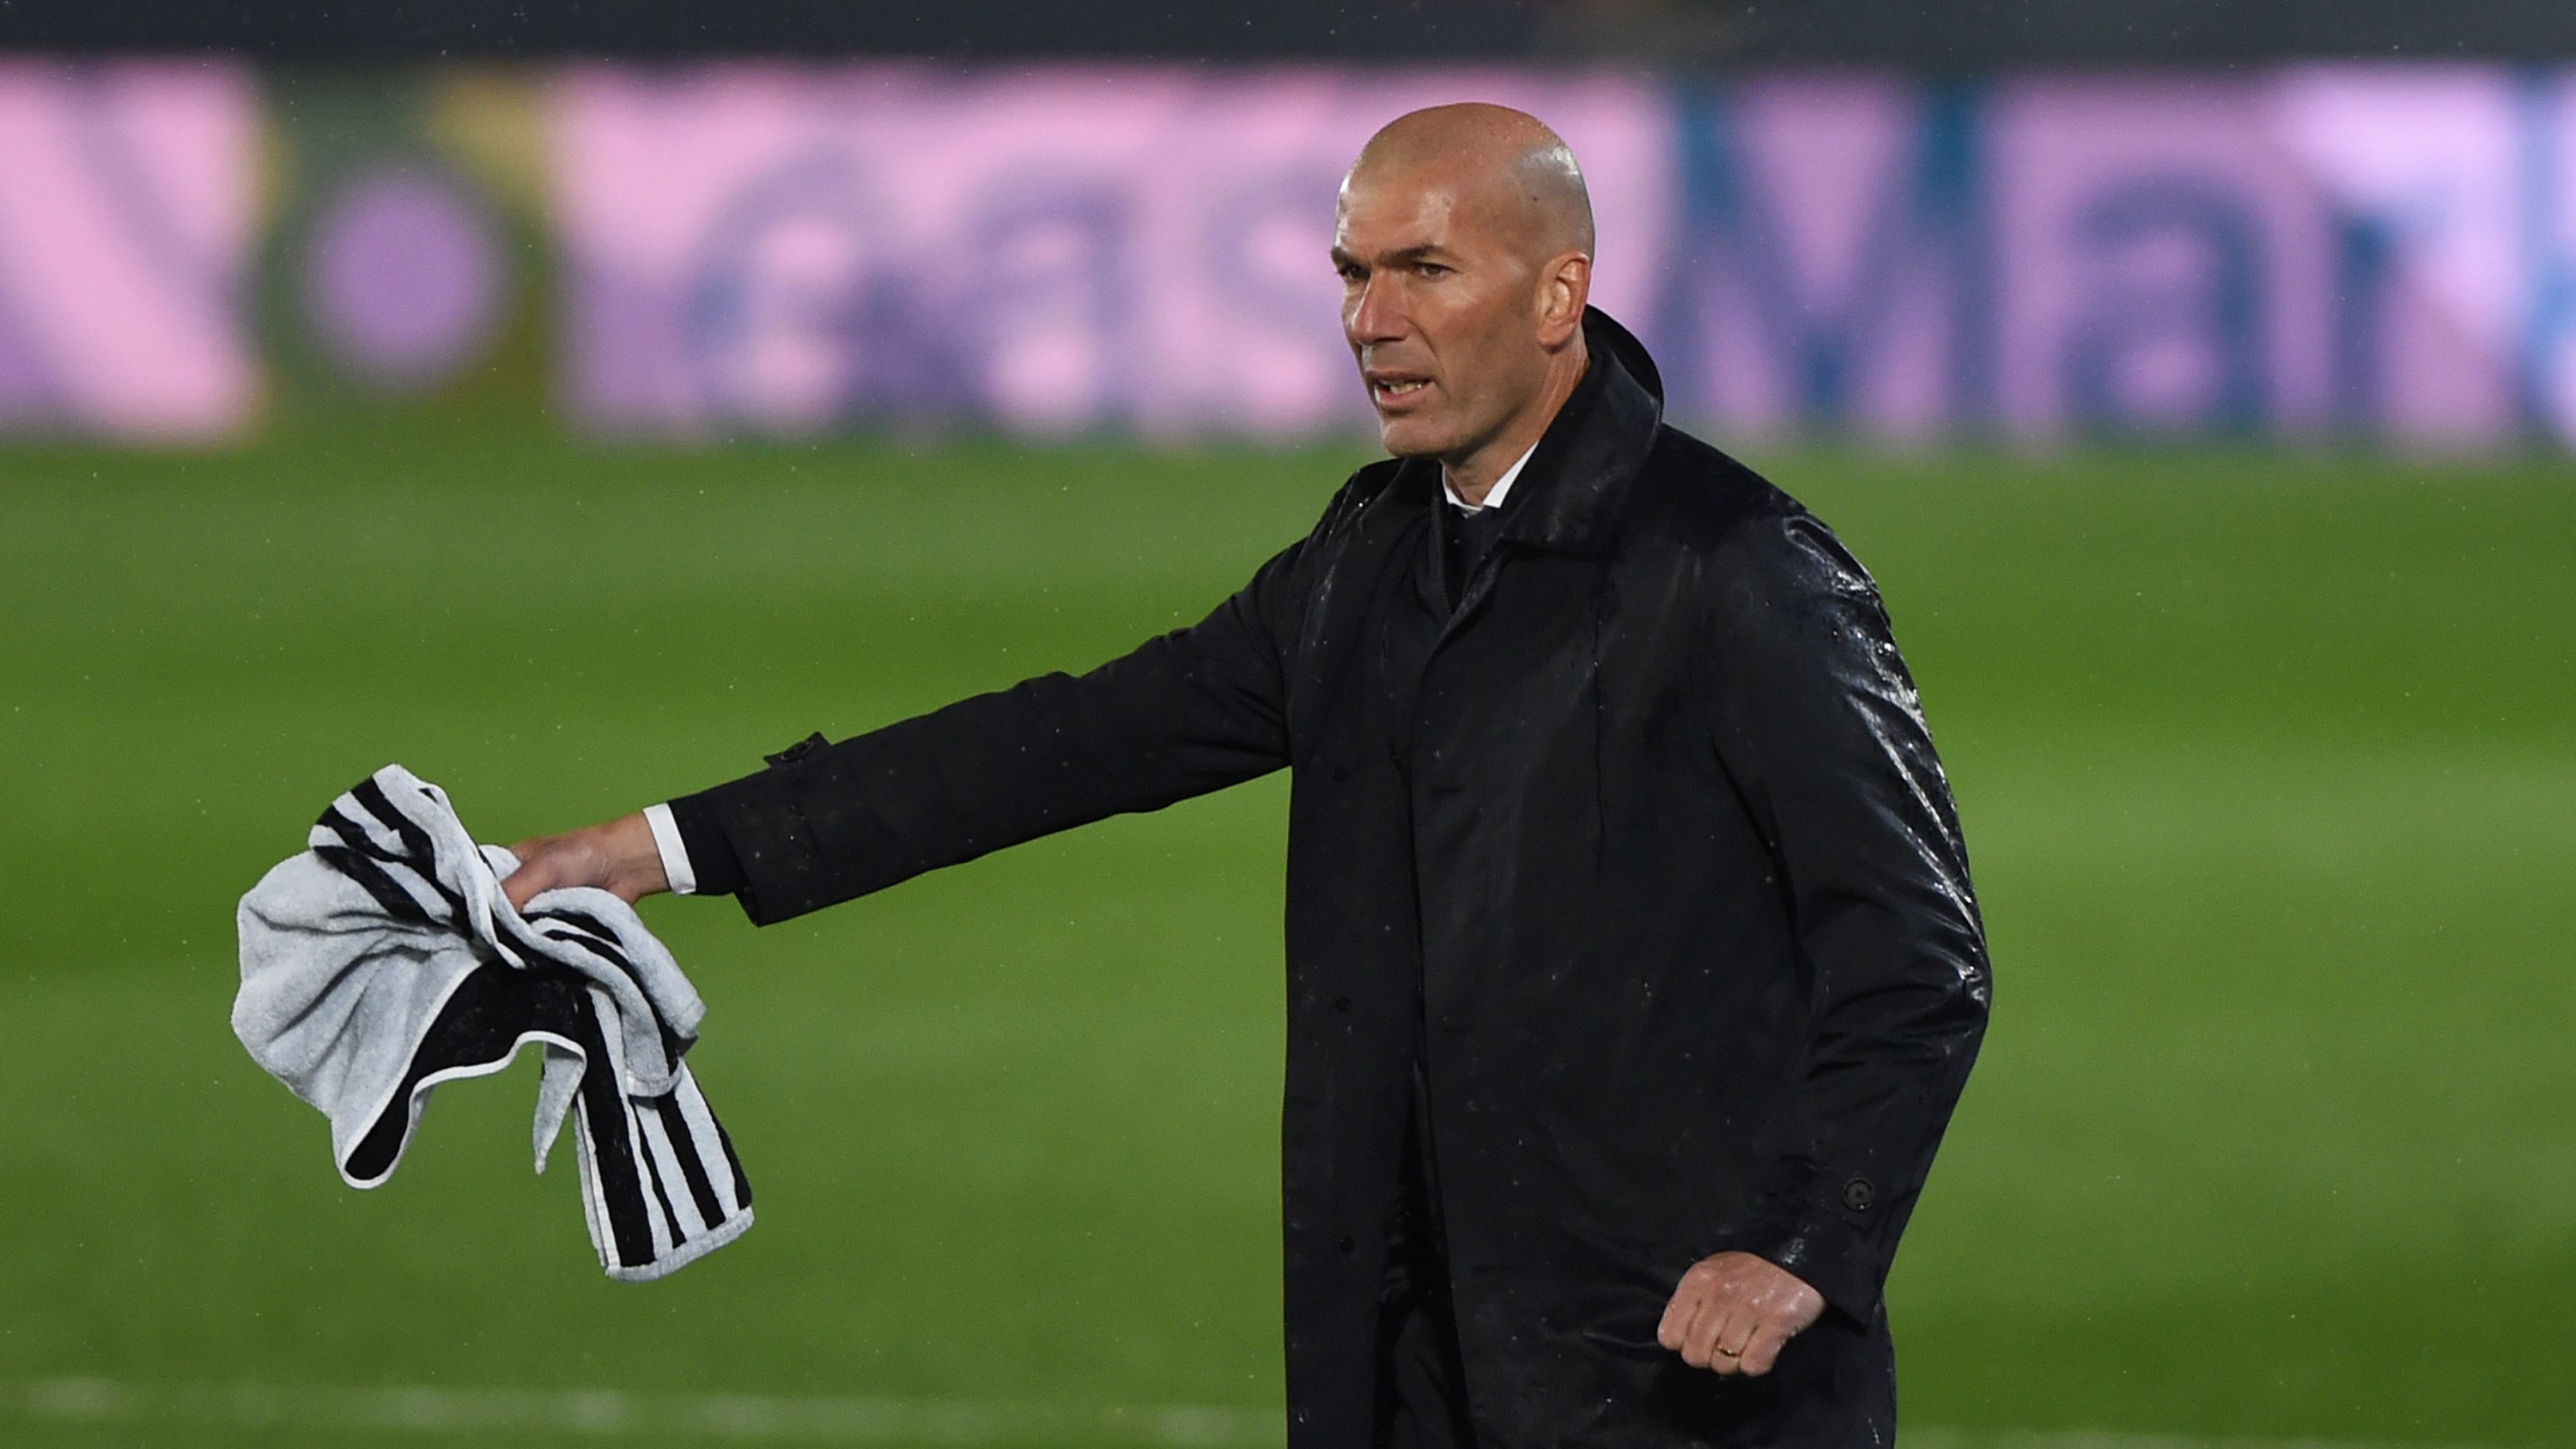 Sajtóhír: Zinédine Zidane lehet a Manchester United új edzője